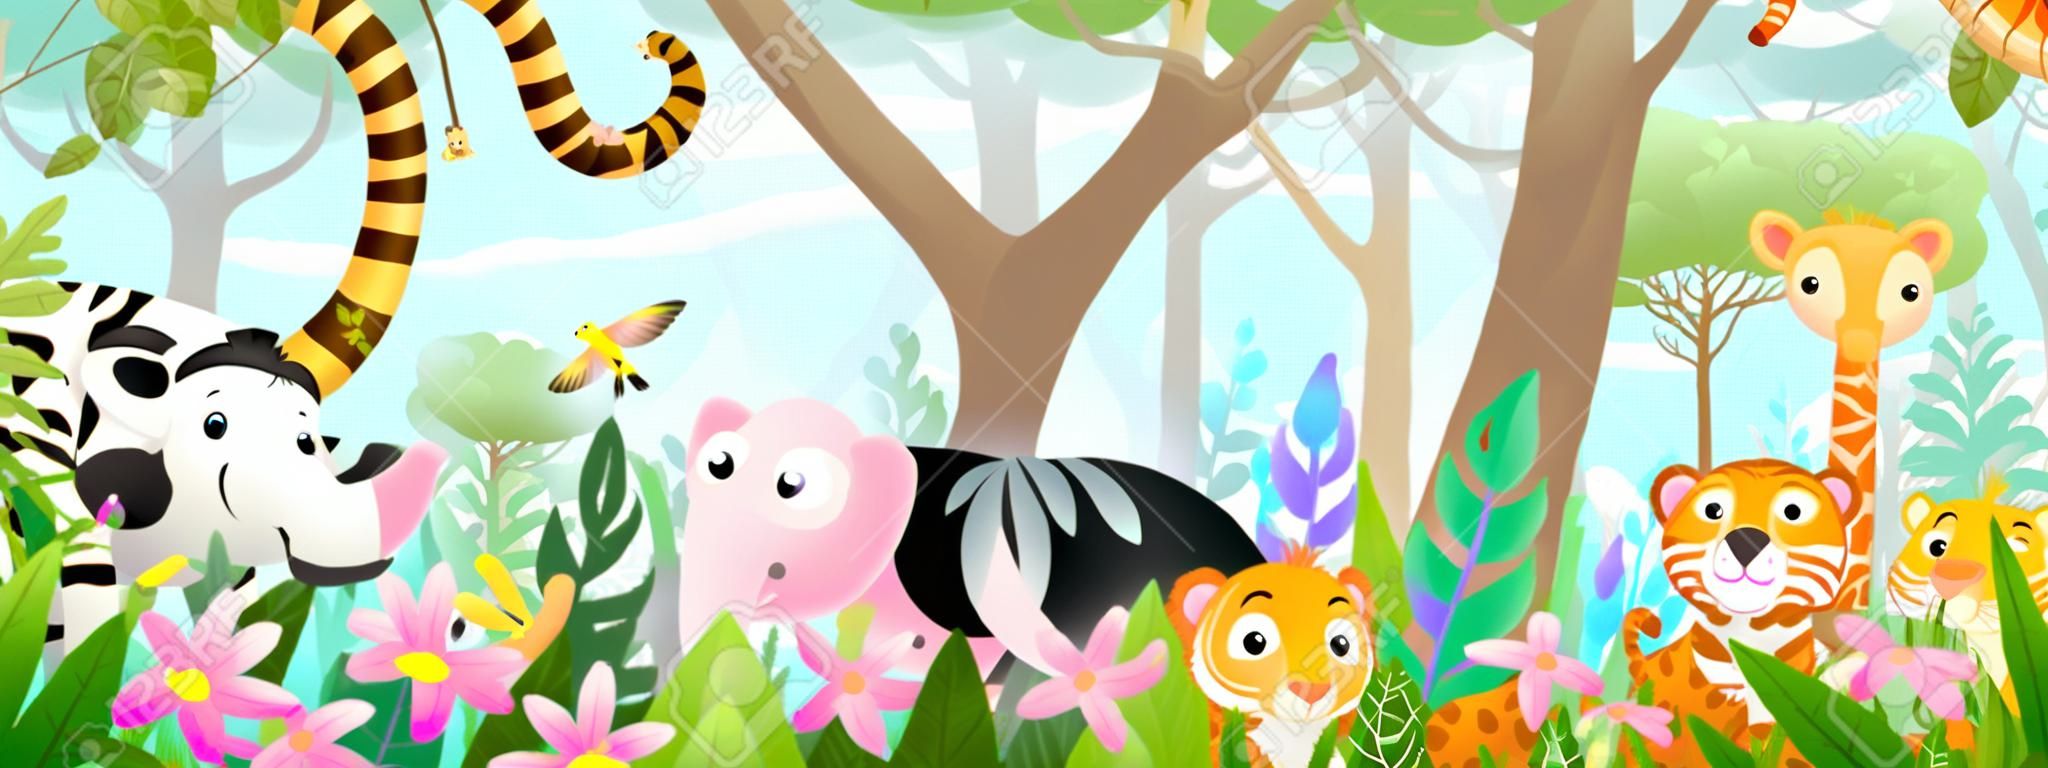 Animali per bambini nella giungla amici carini nella foresta tropicale selvaggia. Molti adorabili animali da safari o da zoo in natura. Panorama orizzontale per bambini e bambini, illustrazione di arte vettoriale.